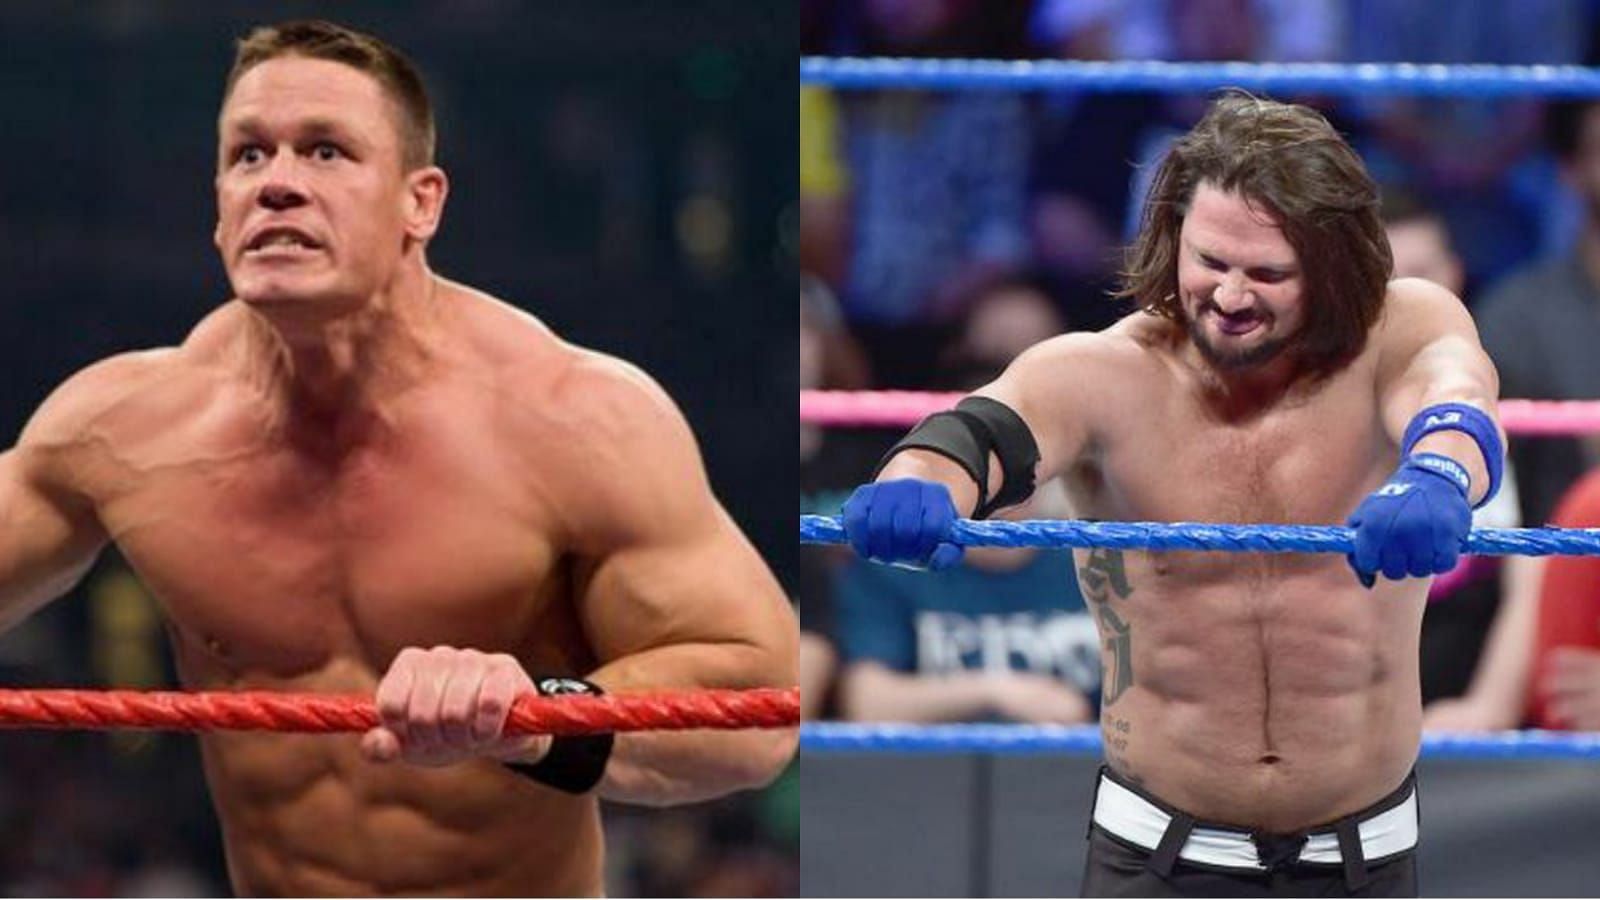 John Cena (left) and AJ Styles (right)